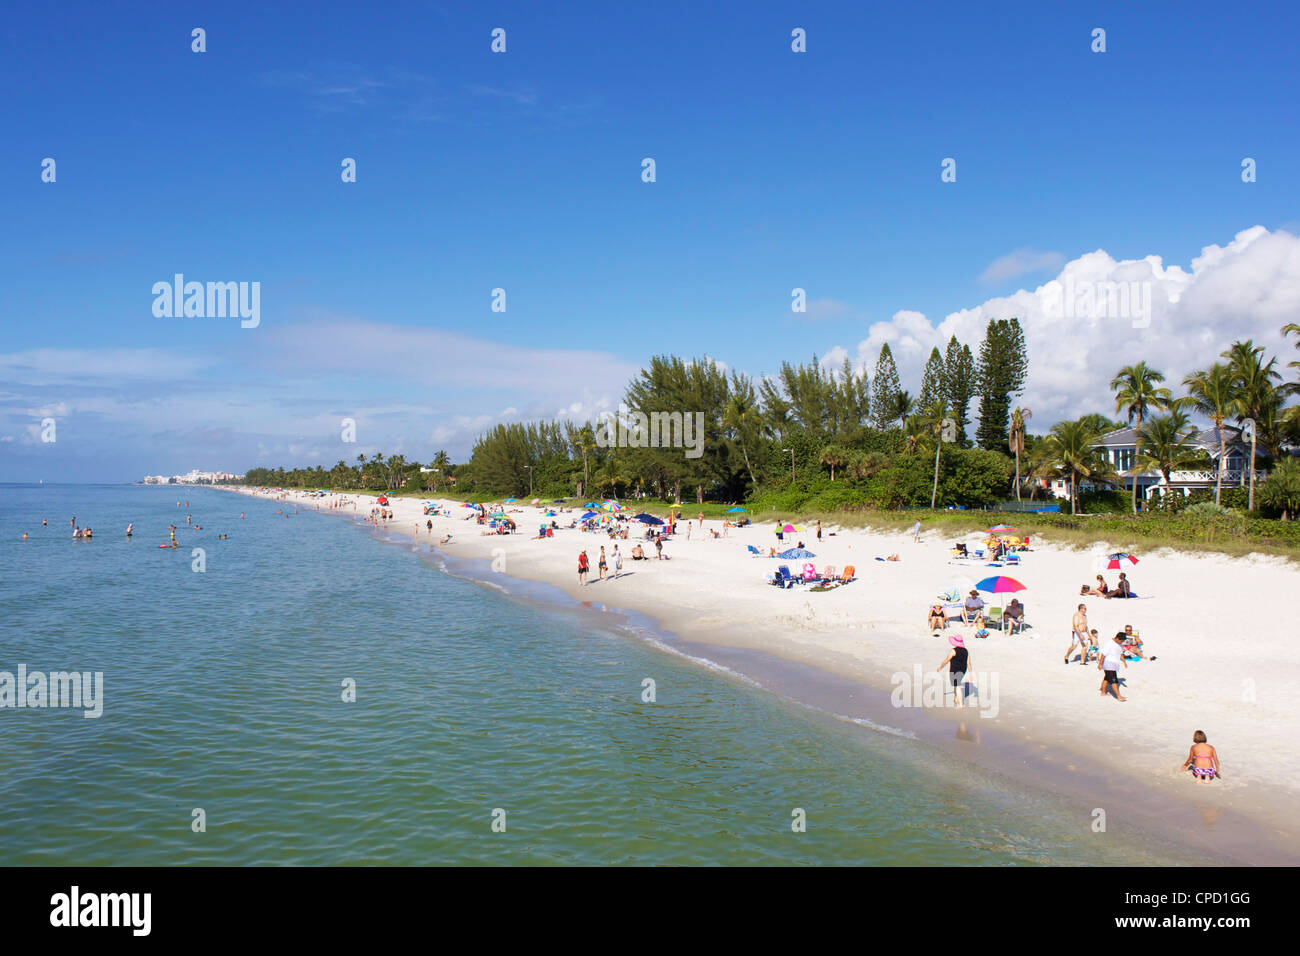 La plage, la Côte du Golfe de Naples, Floride, États-Unis d'Amérique, Amérique du Nord Banque D'Images